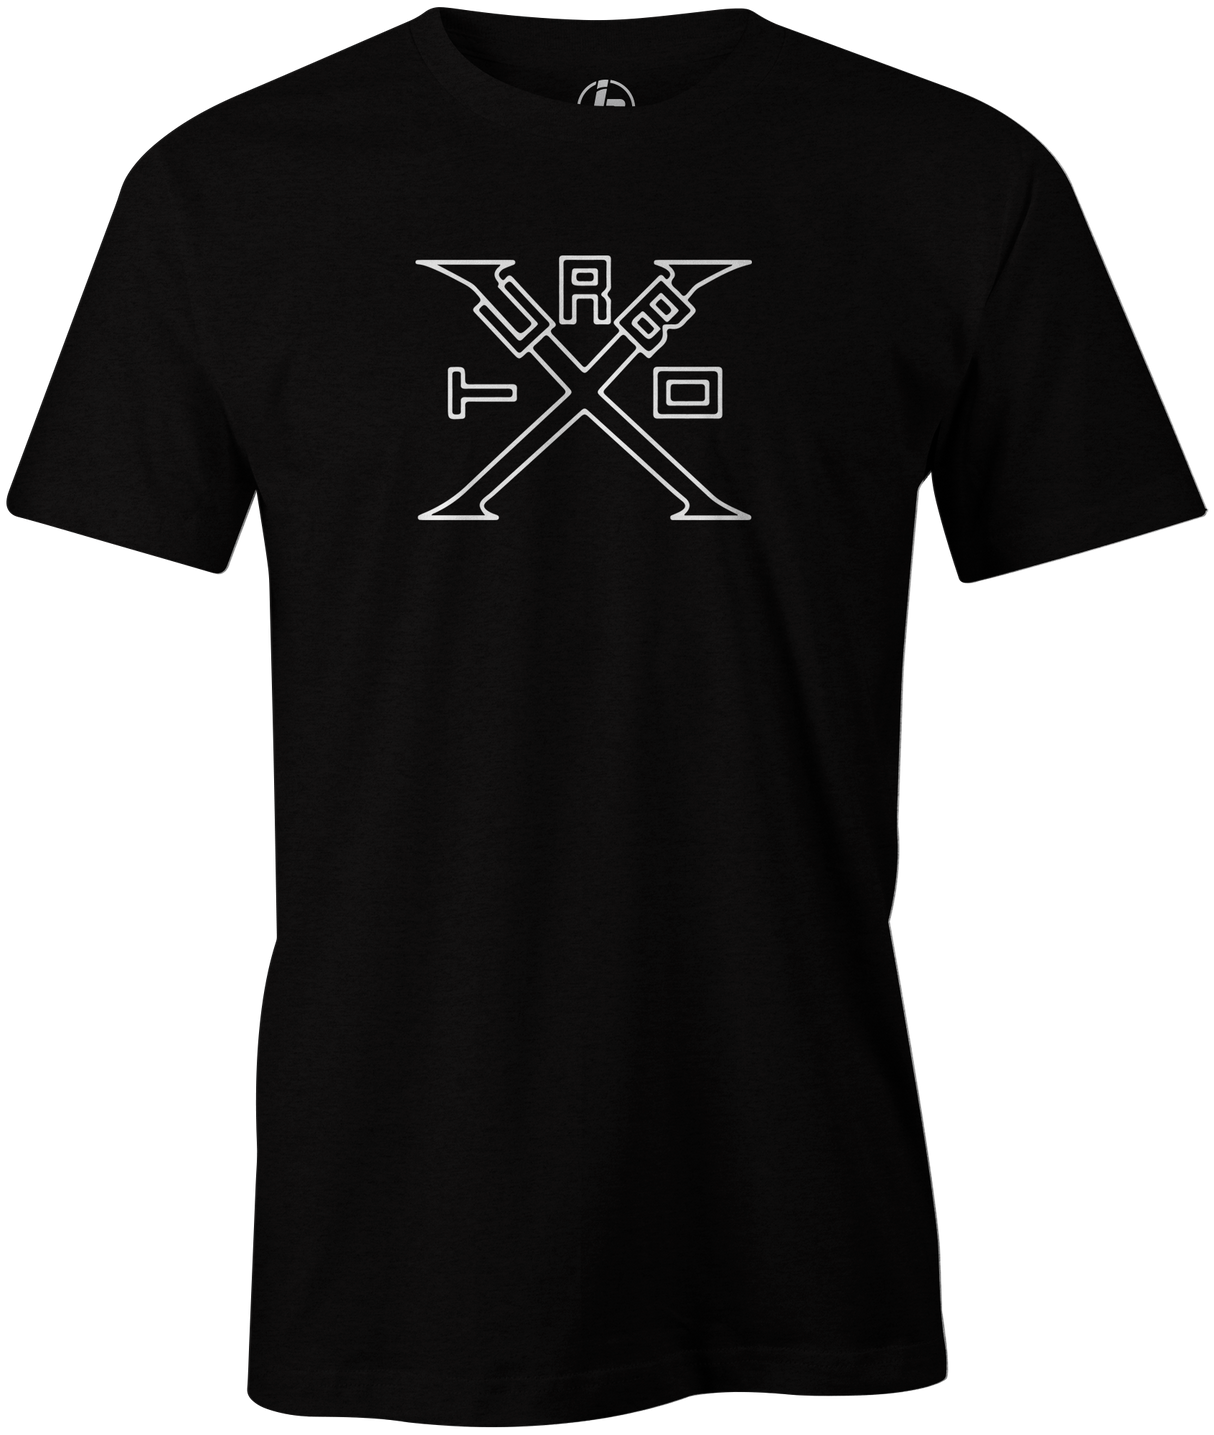 Turbo X Men's T-Shirt, Black, bowling, bowling ball, ebonite, ebonite bowling, classic, vintage, retro, throwback, original, old school, tee, tee shirt, tee-shirt, tshirt.